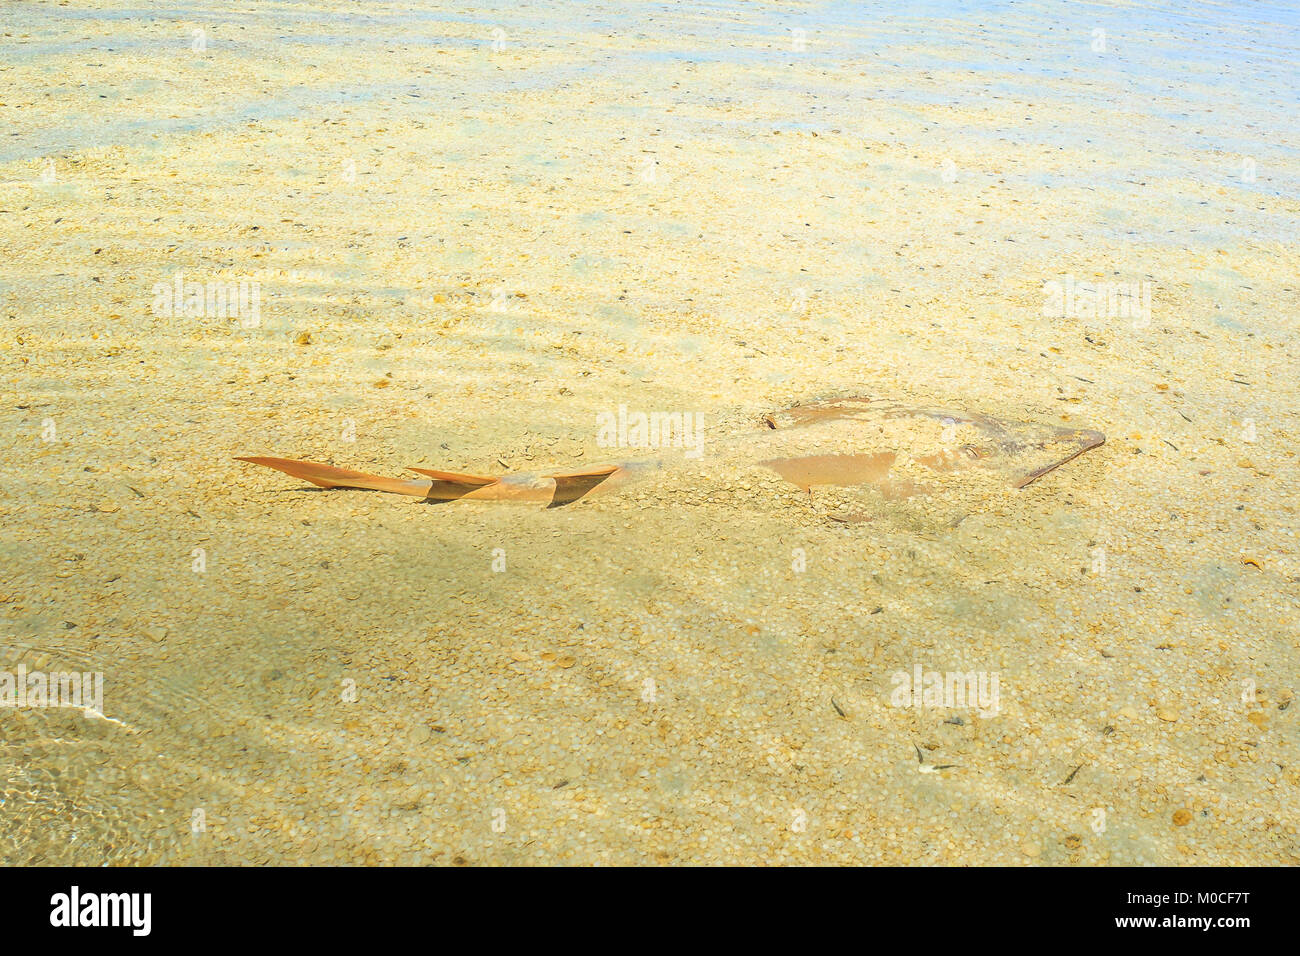 Guitarfish in Shell Beach Stock Photo